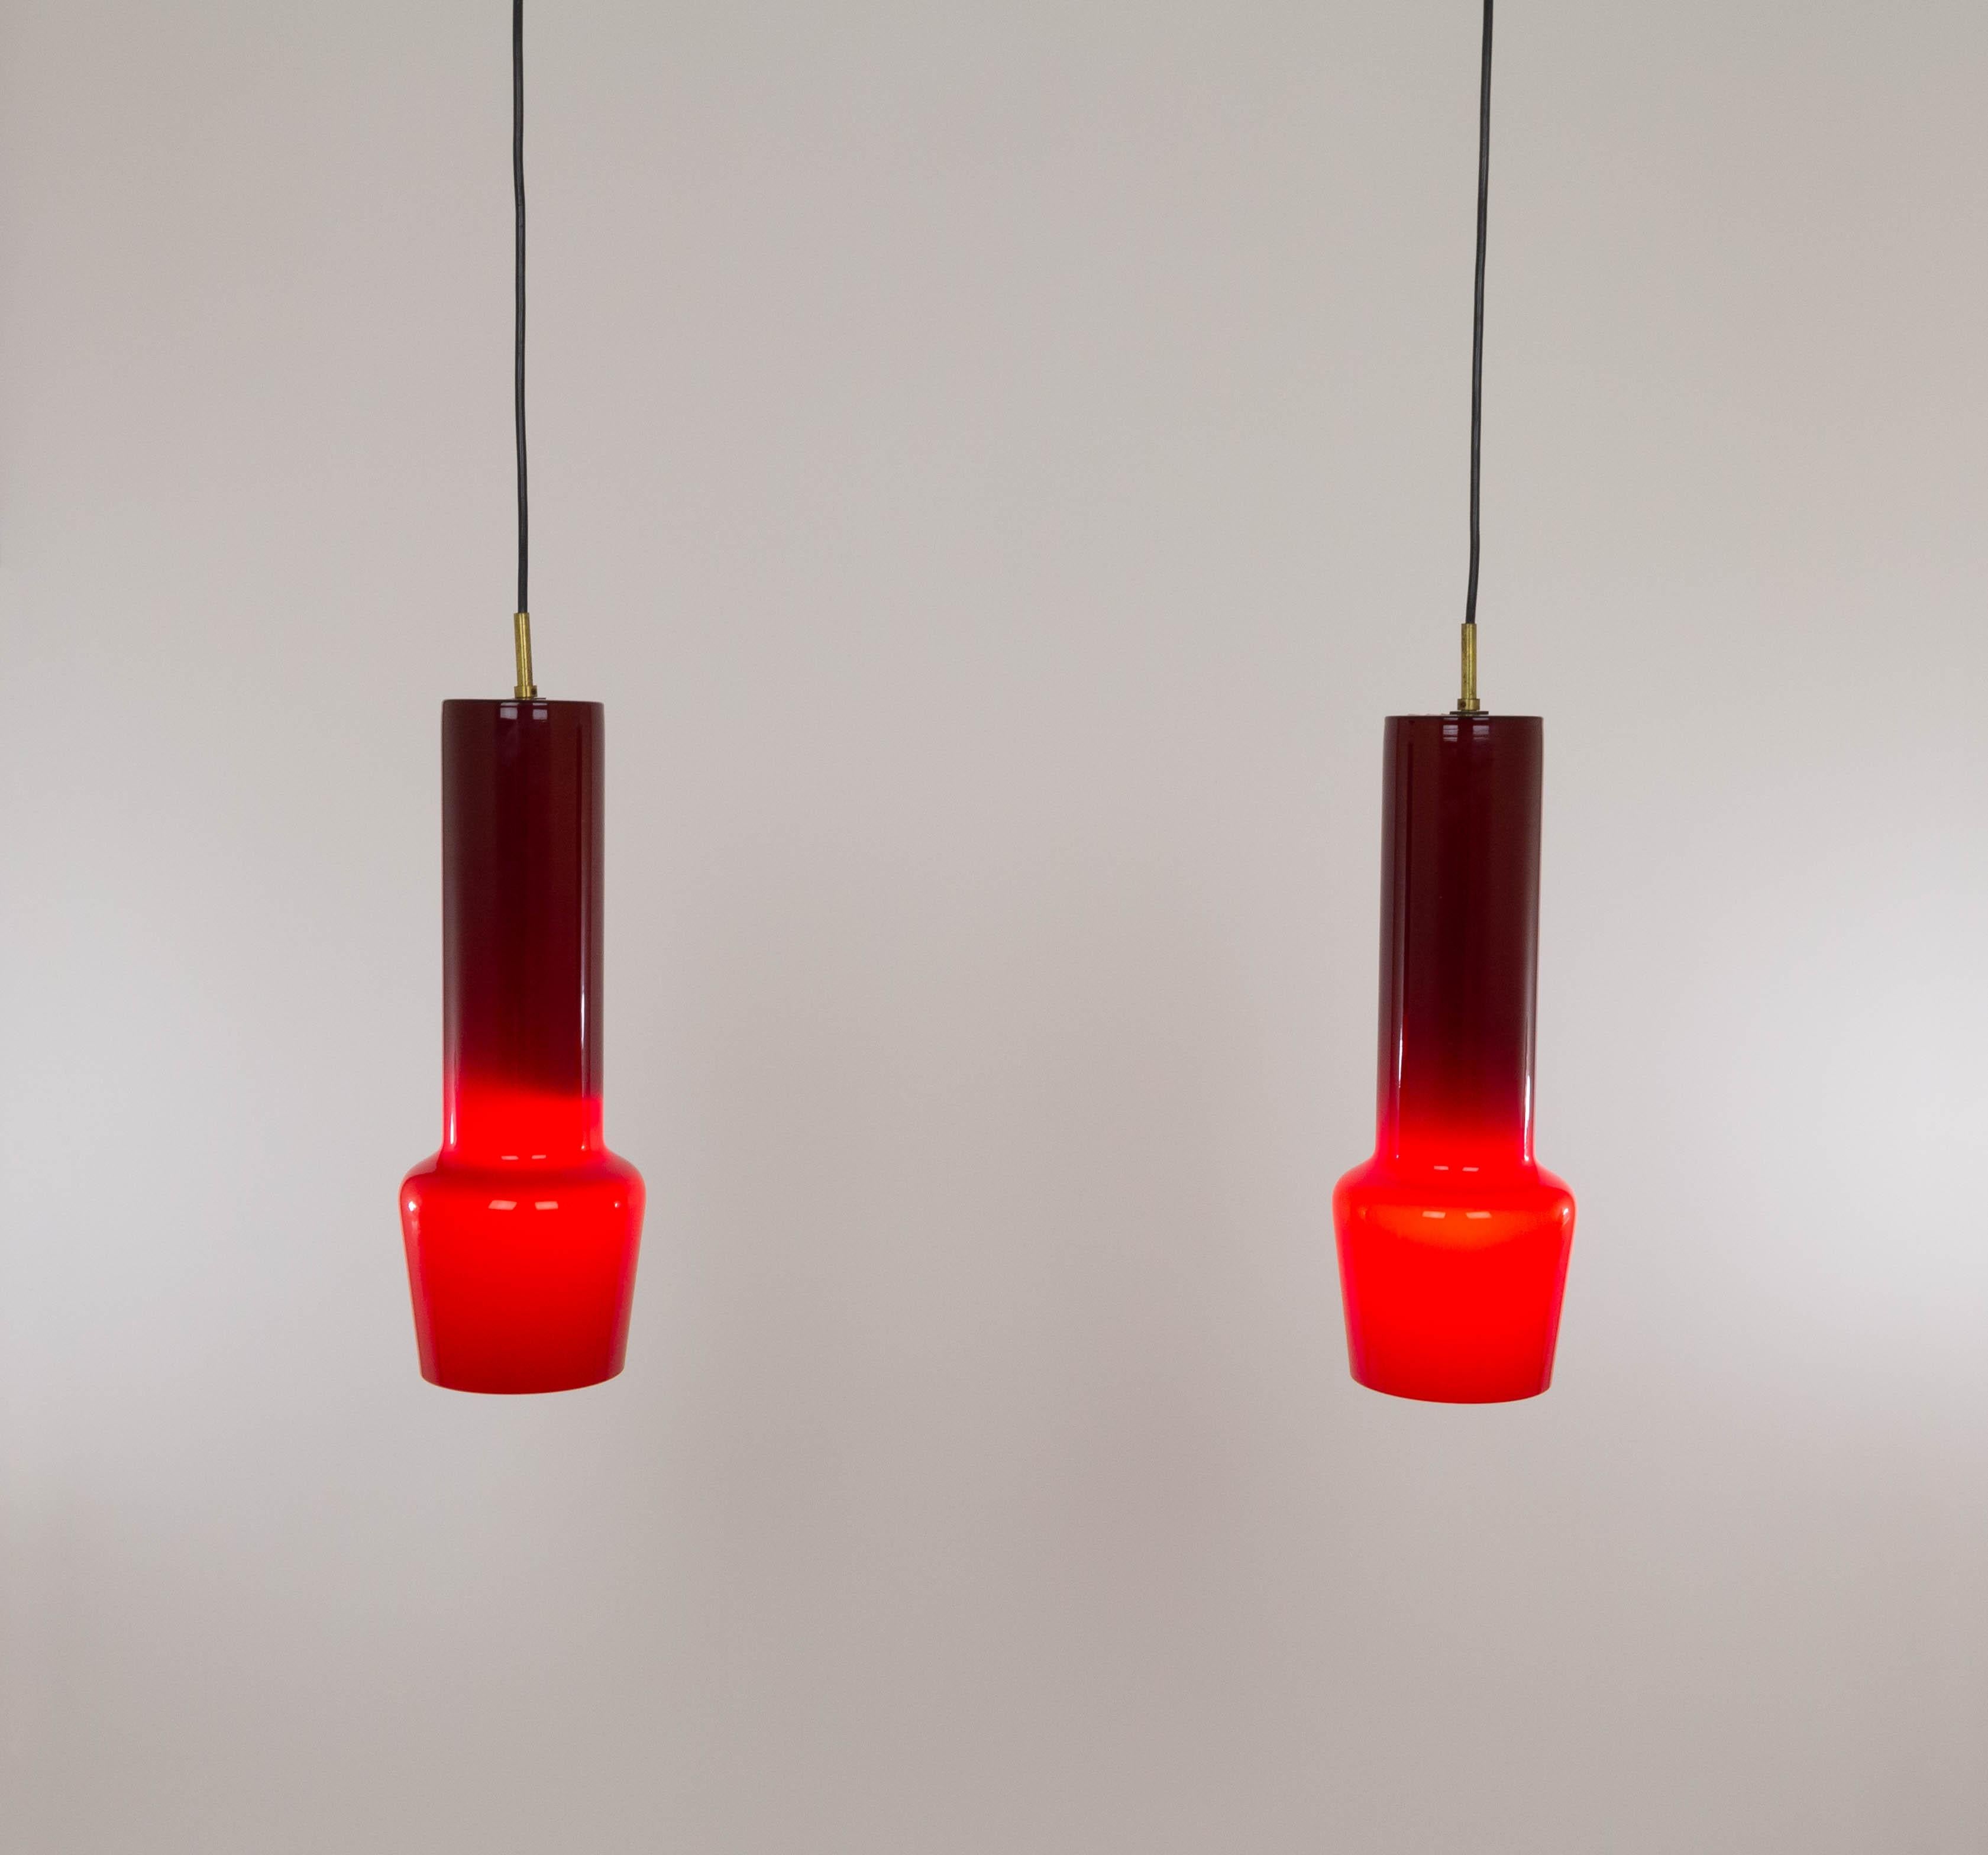 Ein Paar mundgeblasener roter Glasanhänger Nr. 011.11, entworfen von Massimo Vignelli zu Beginn seiner beeindruckenden Designerkarriere und ausgeführt vom Murano-Glasspezialisten Venini. Eine der charakteristischsten Lampen, die Vignelli für Venini